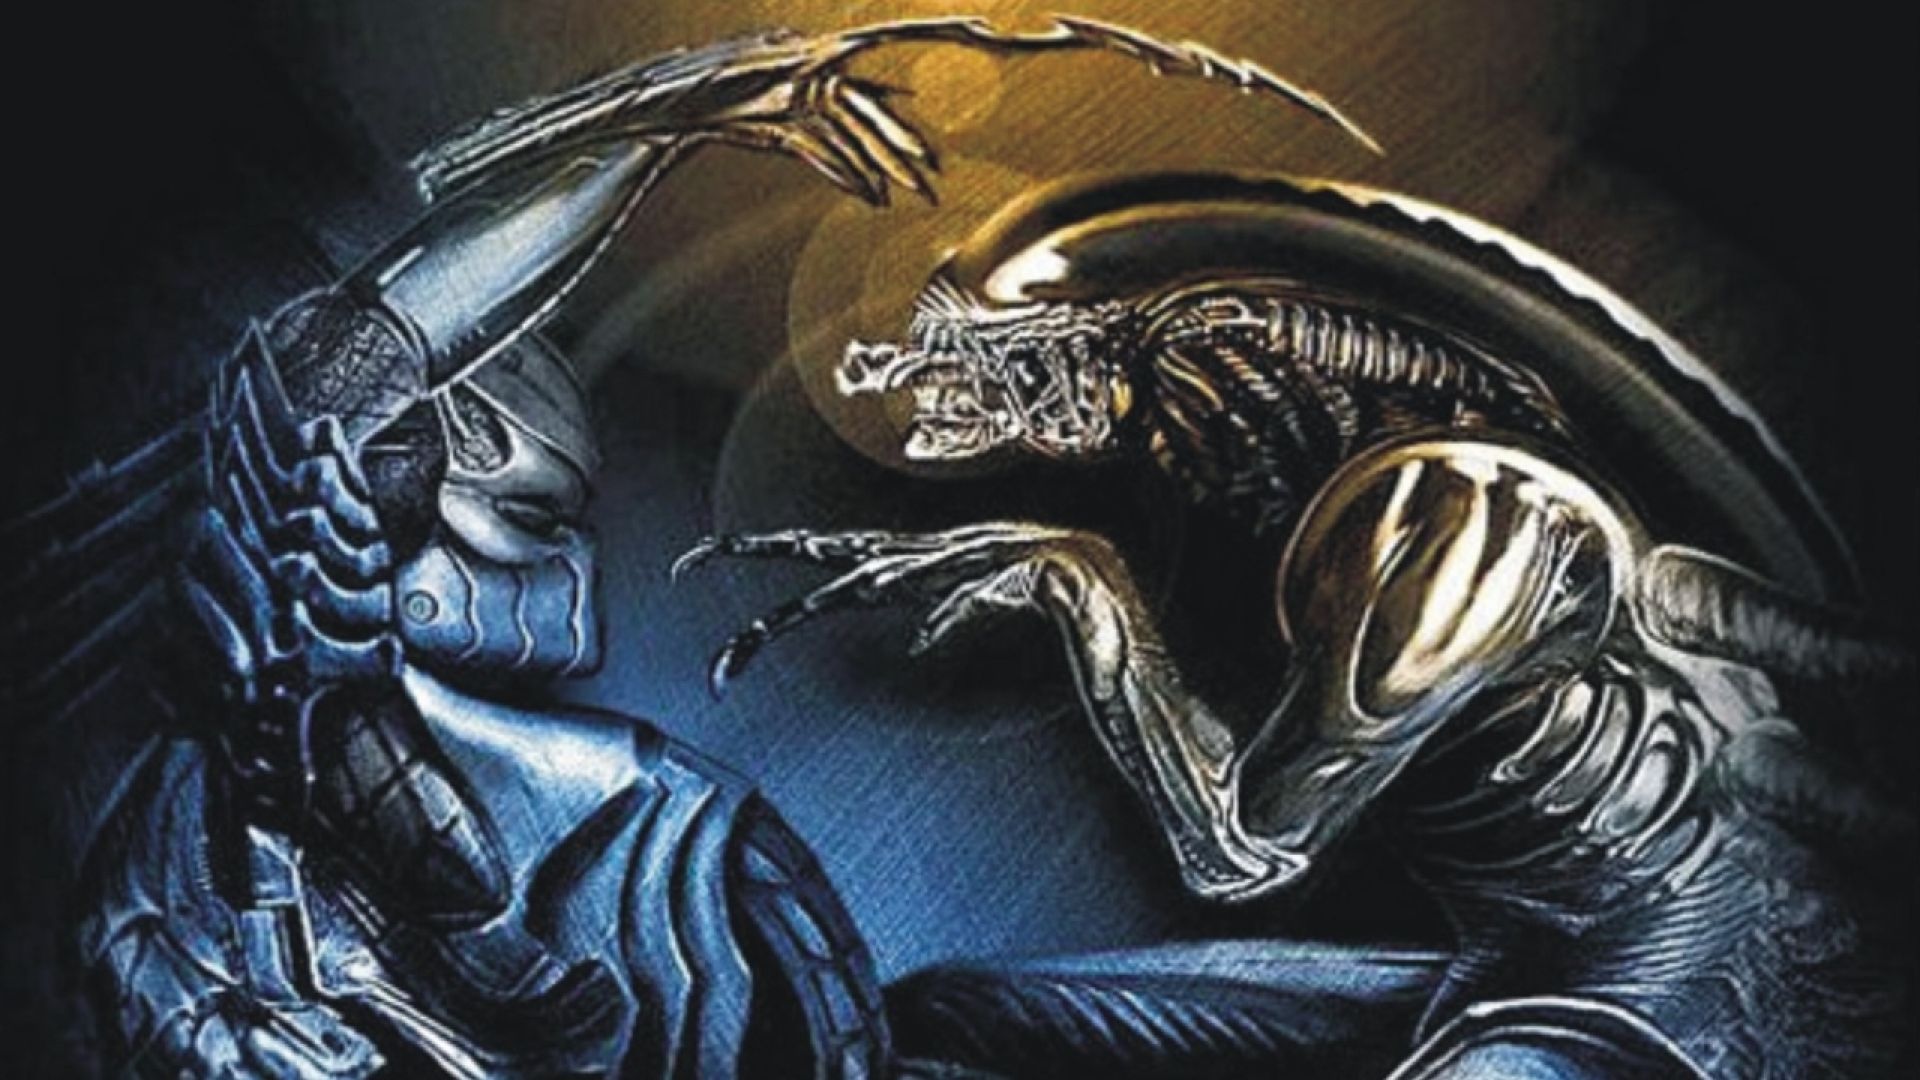 download alien vs predator 2004